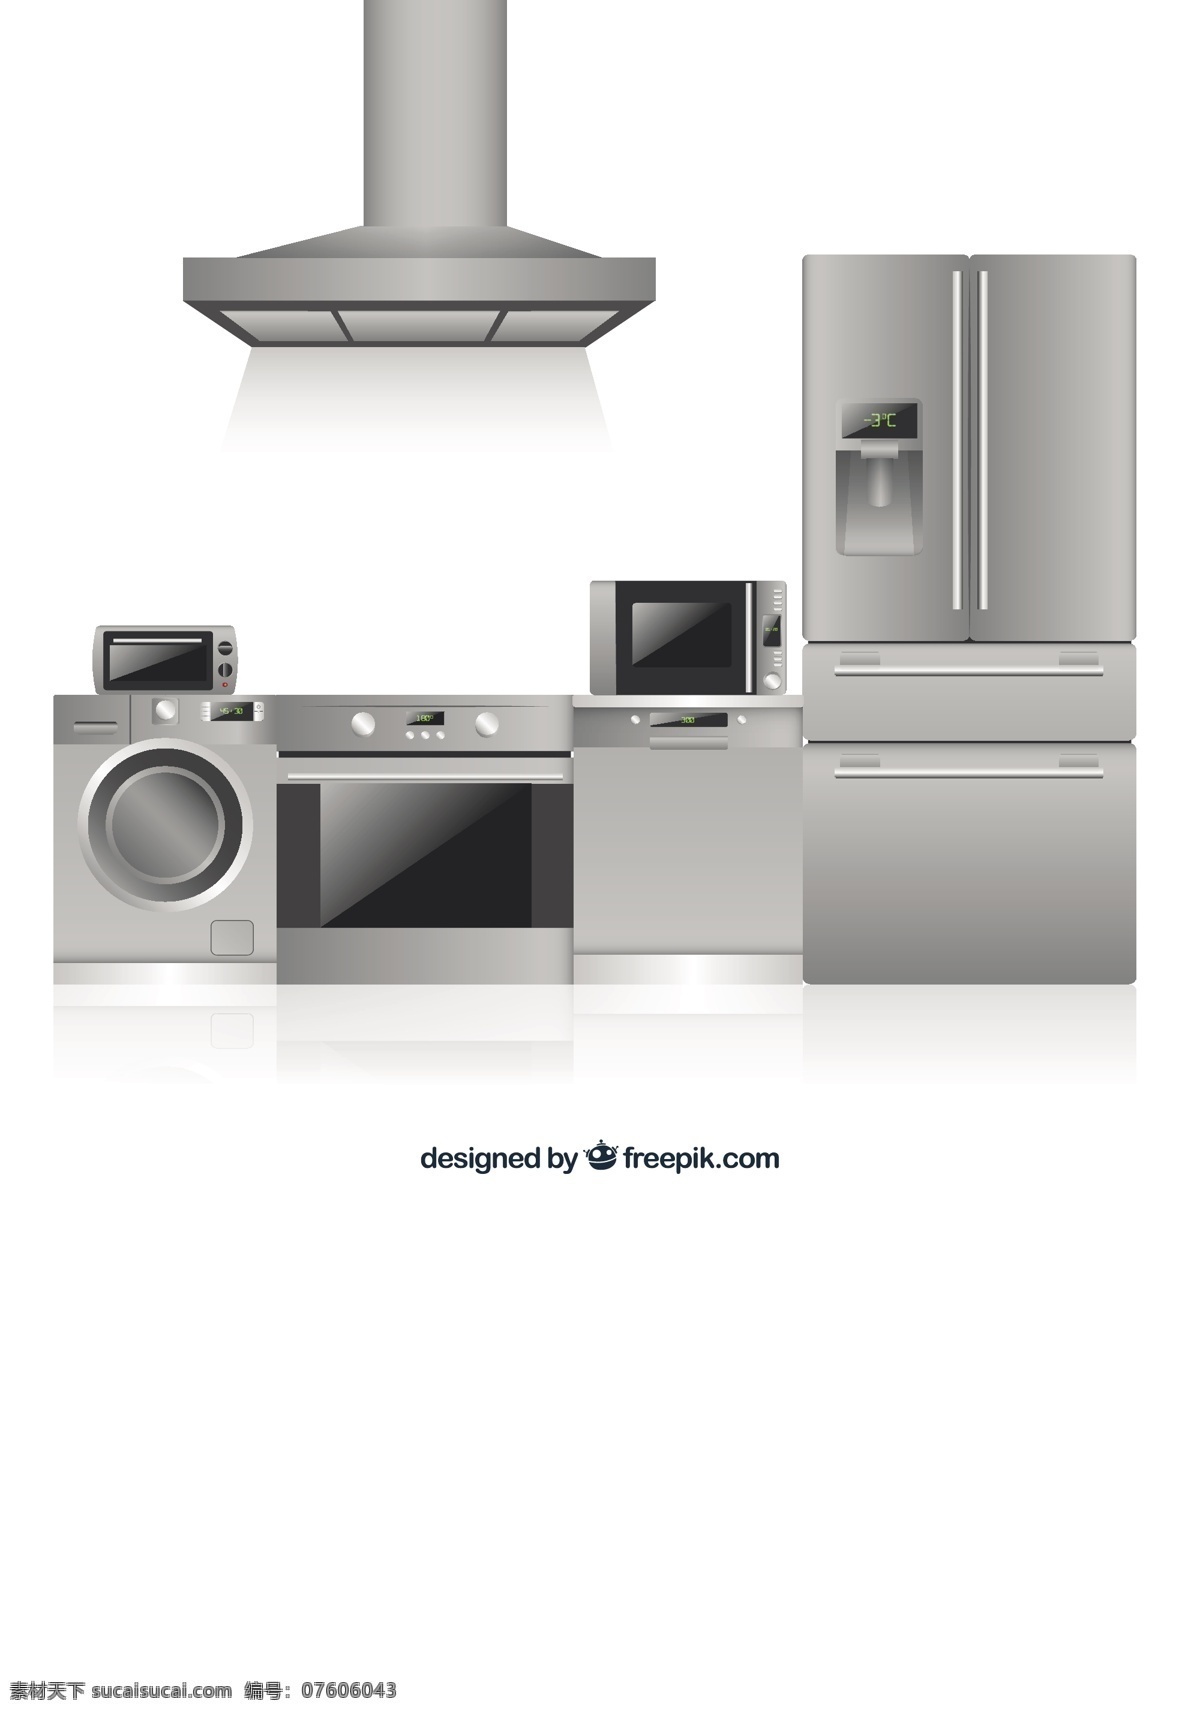 平面设计 中 厨房用具 厨房 家庭 平板 烹饪 健康 机器 灰色 洗衣机 冰箱 烤箱 金属 家电 微波炉 家用 洗碗机